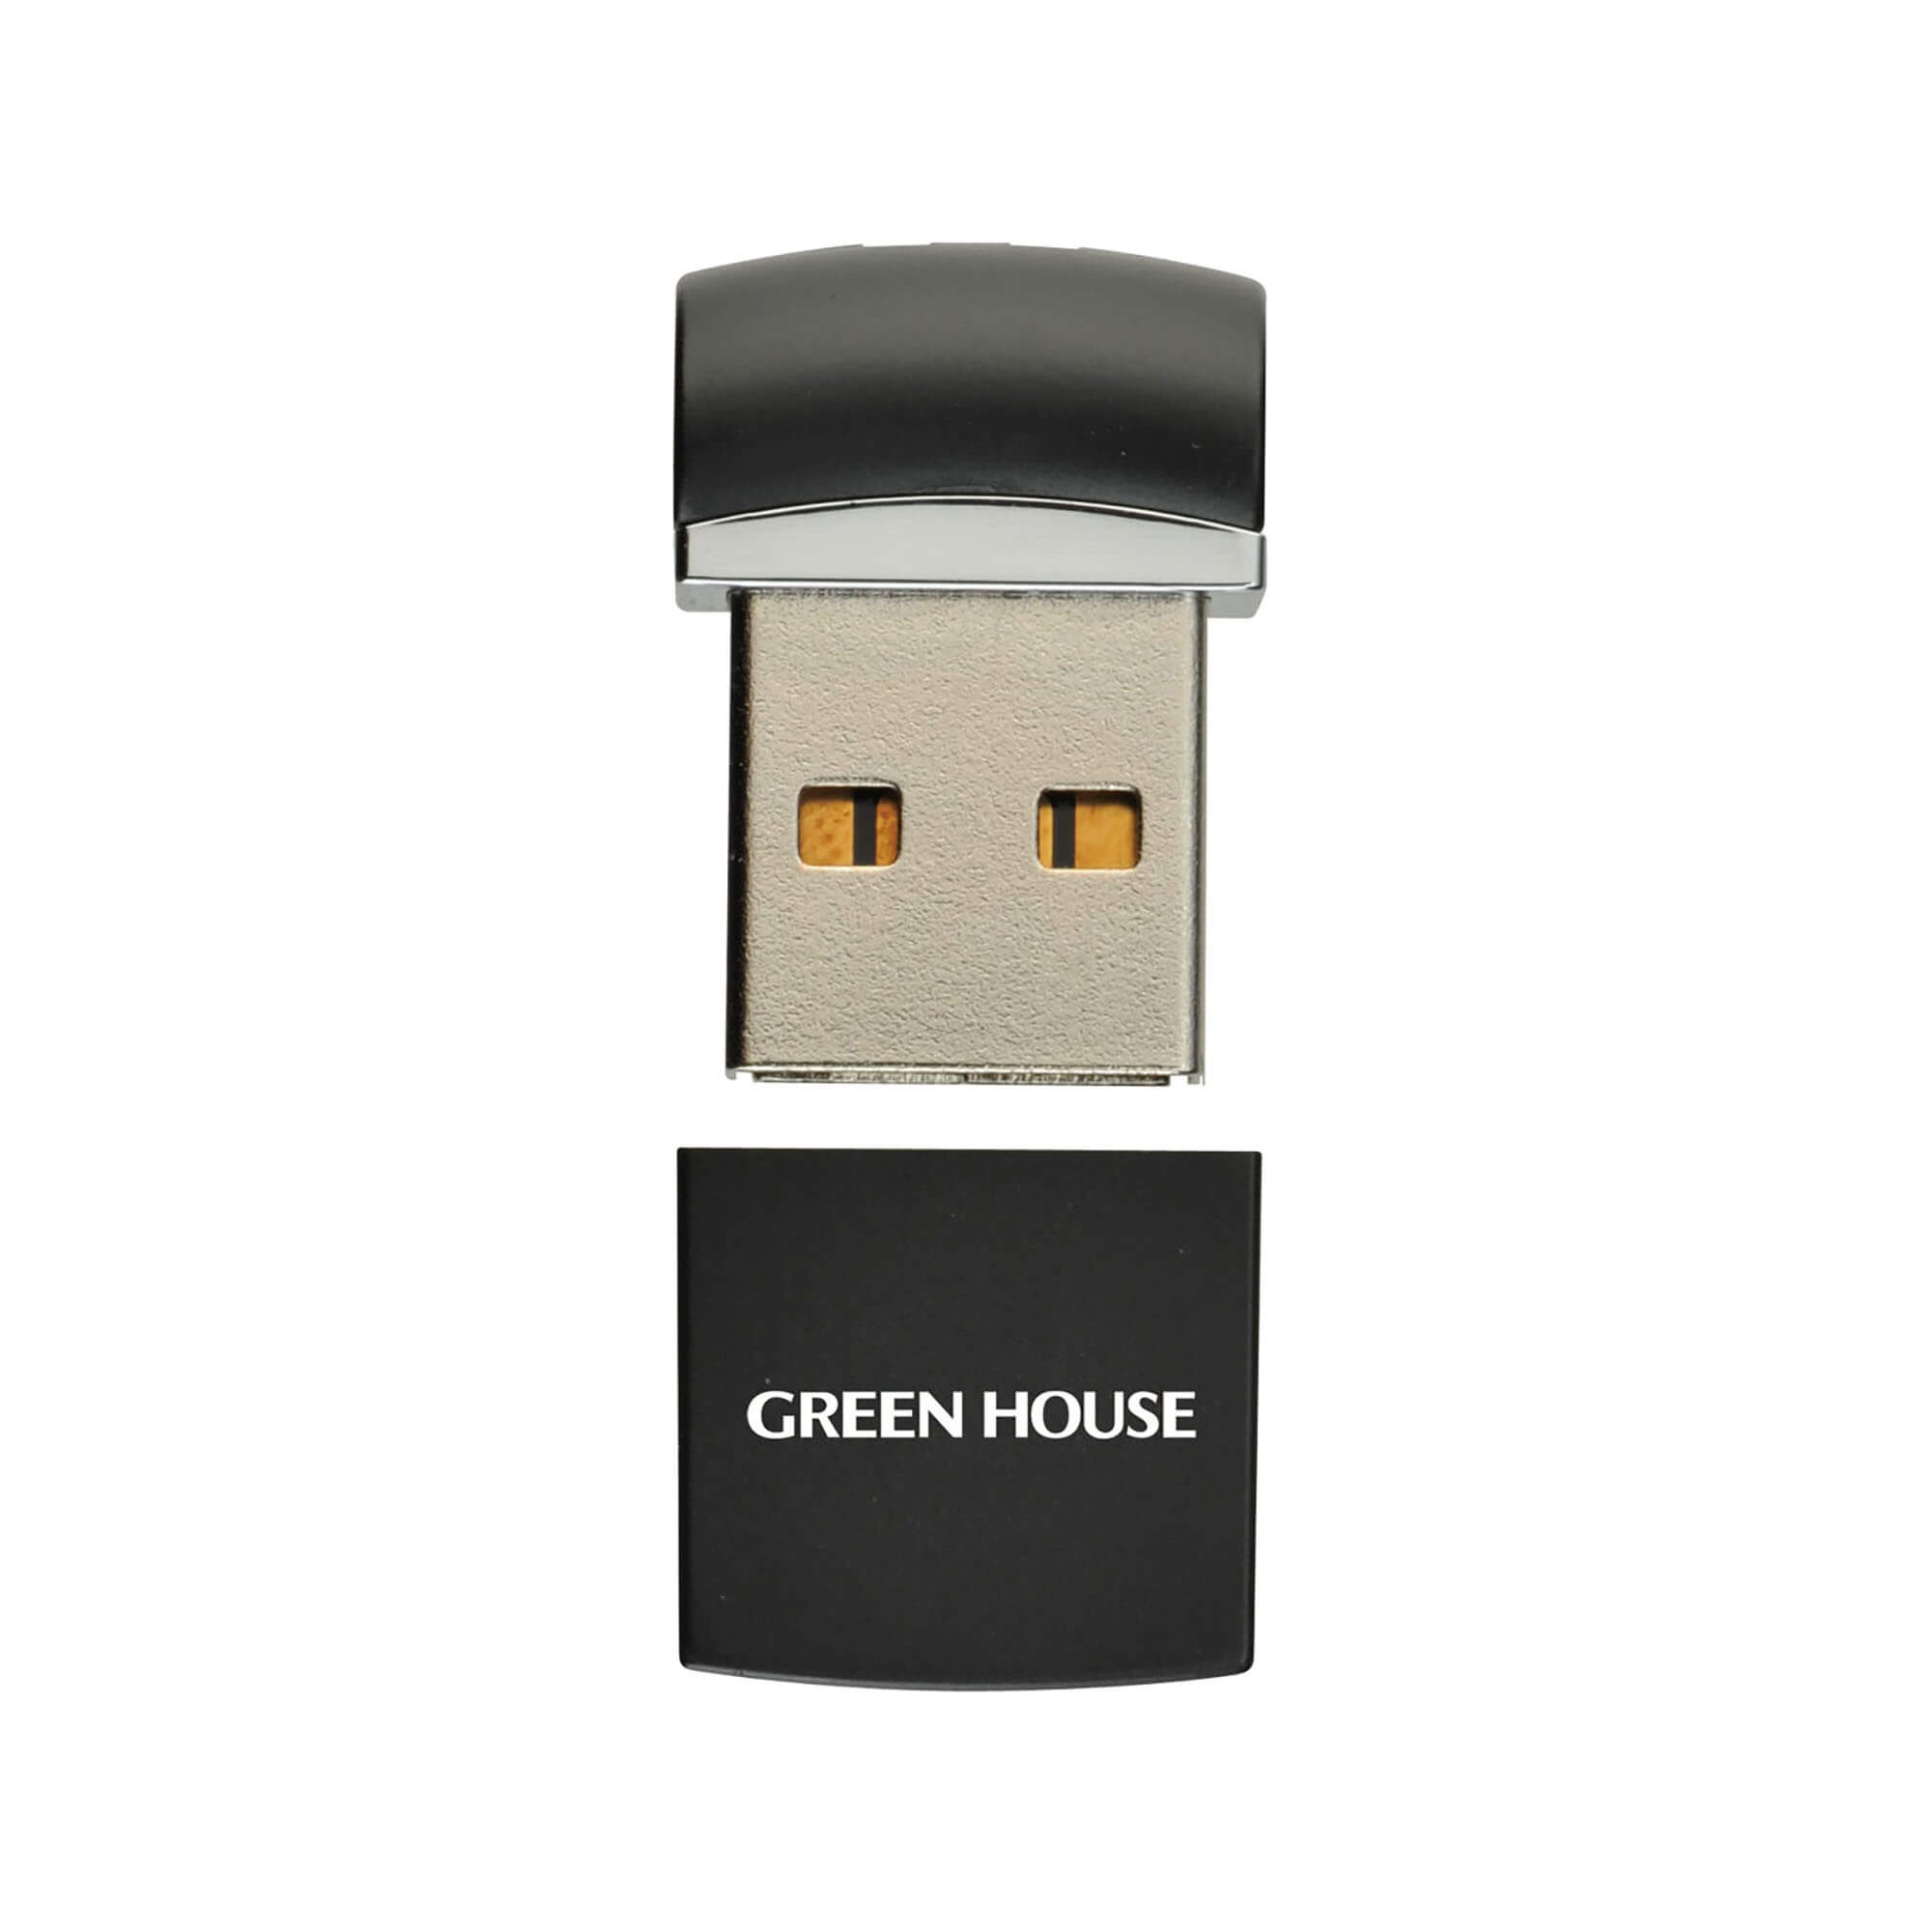 USB2.0 | GH-UFD*Nシリーズ | GREEN HOUSE グリーンハウス